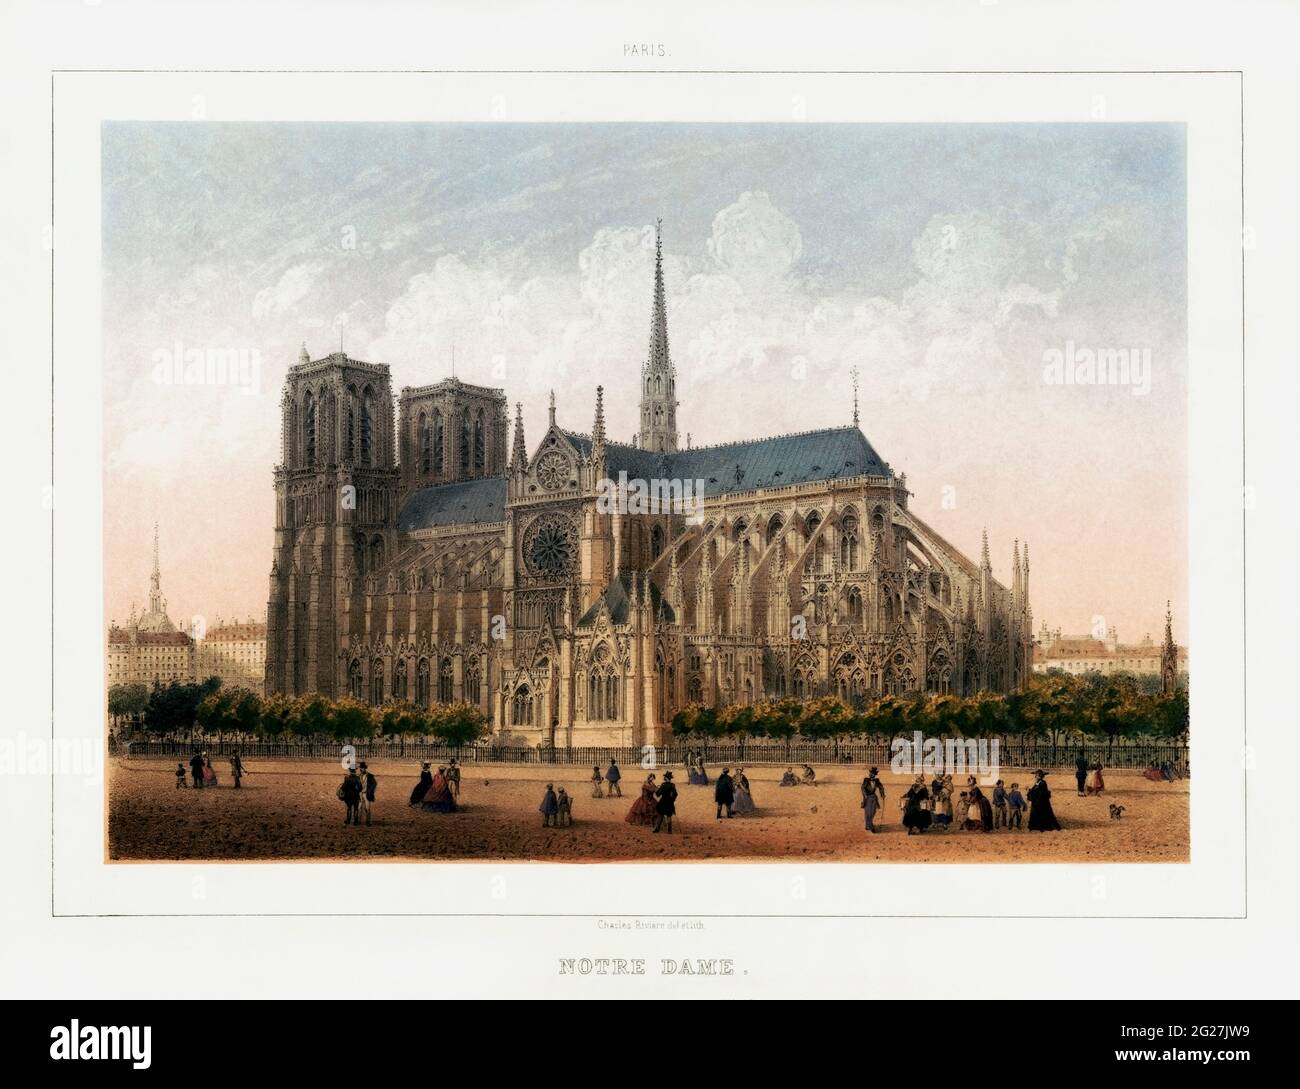 Druck aus dem 19. Jahrhundert von Notre Dame de Paris, einer mittelalterlichen katholischen Kathedrale in Paris, Frankreich. Stockfoto